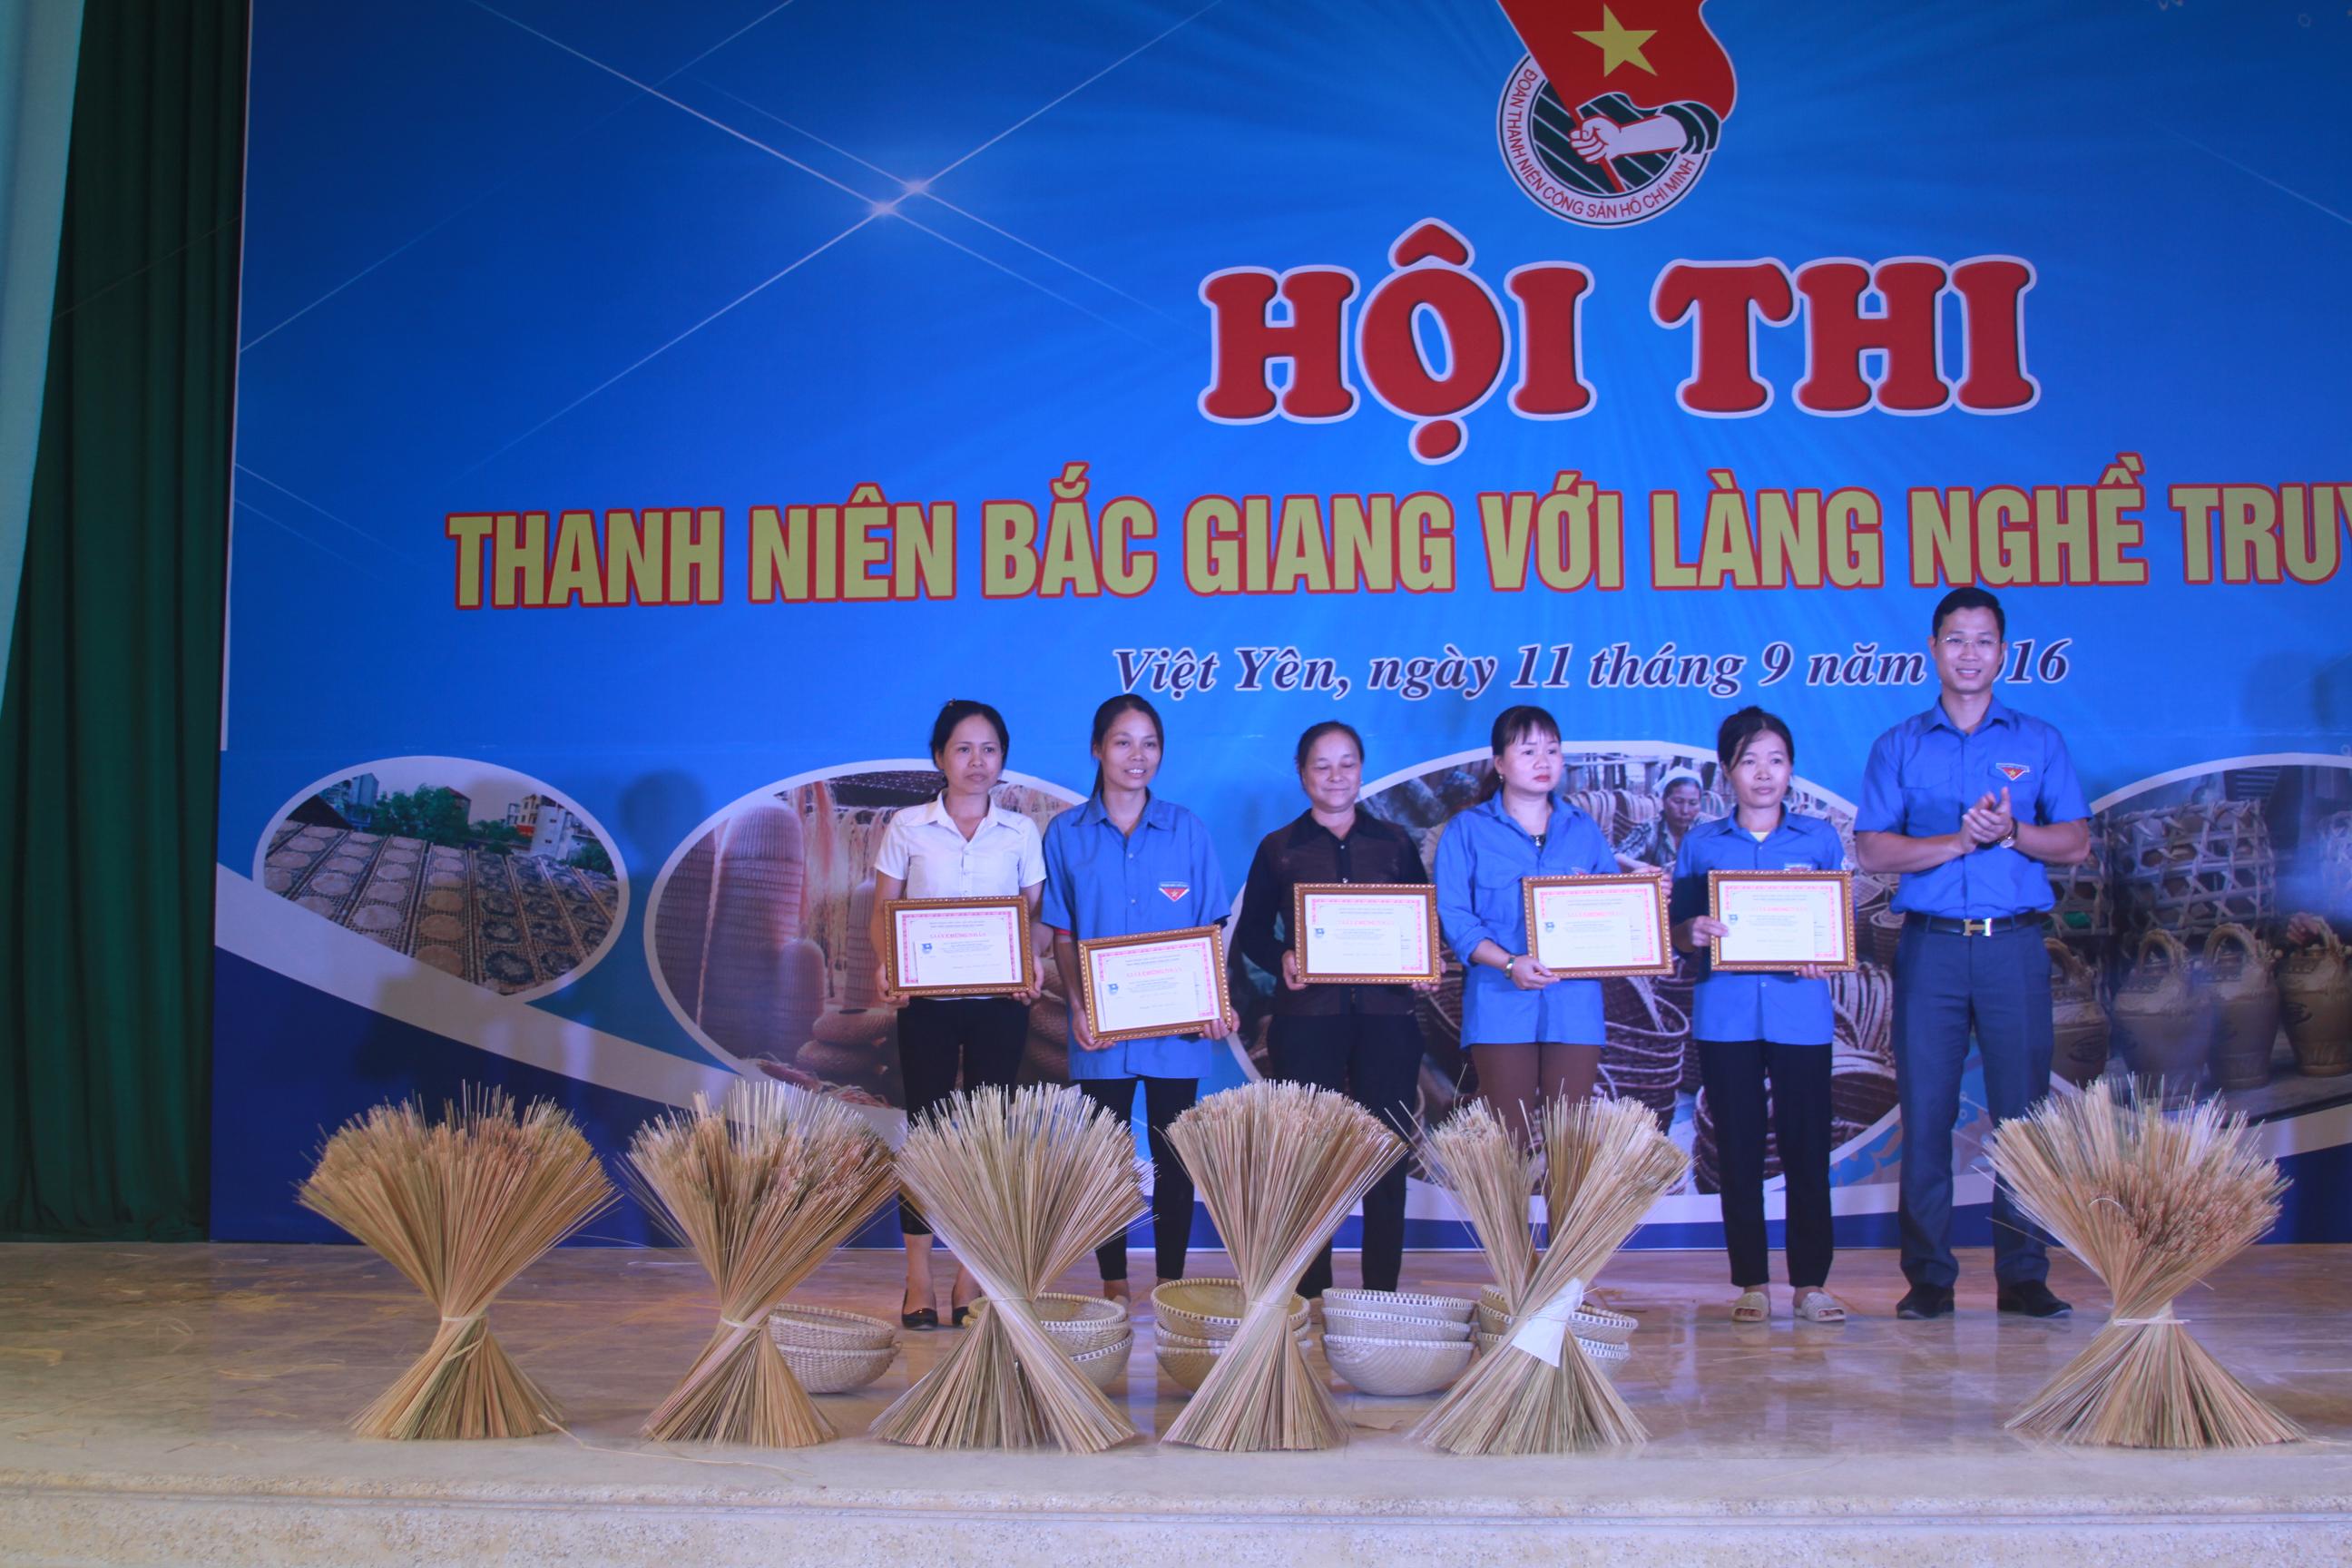 Hội thi thanh niên Bắc Giang với làng nghề truyền thống tại xã Tăng Tiến